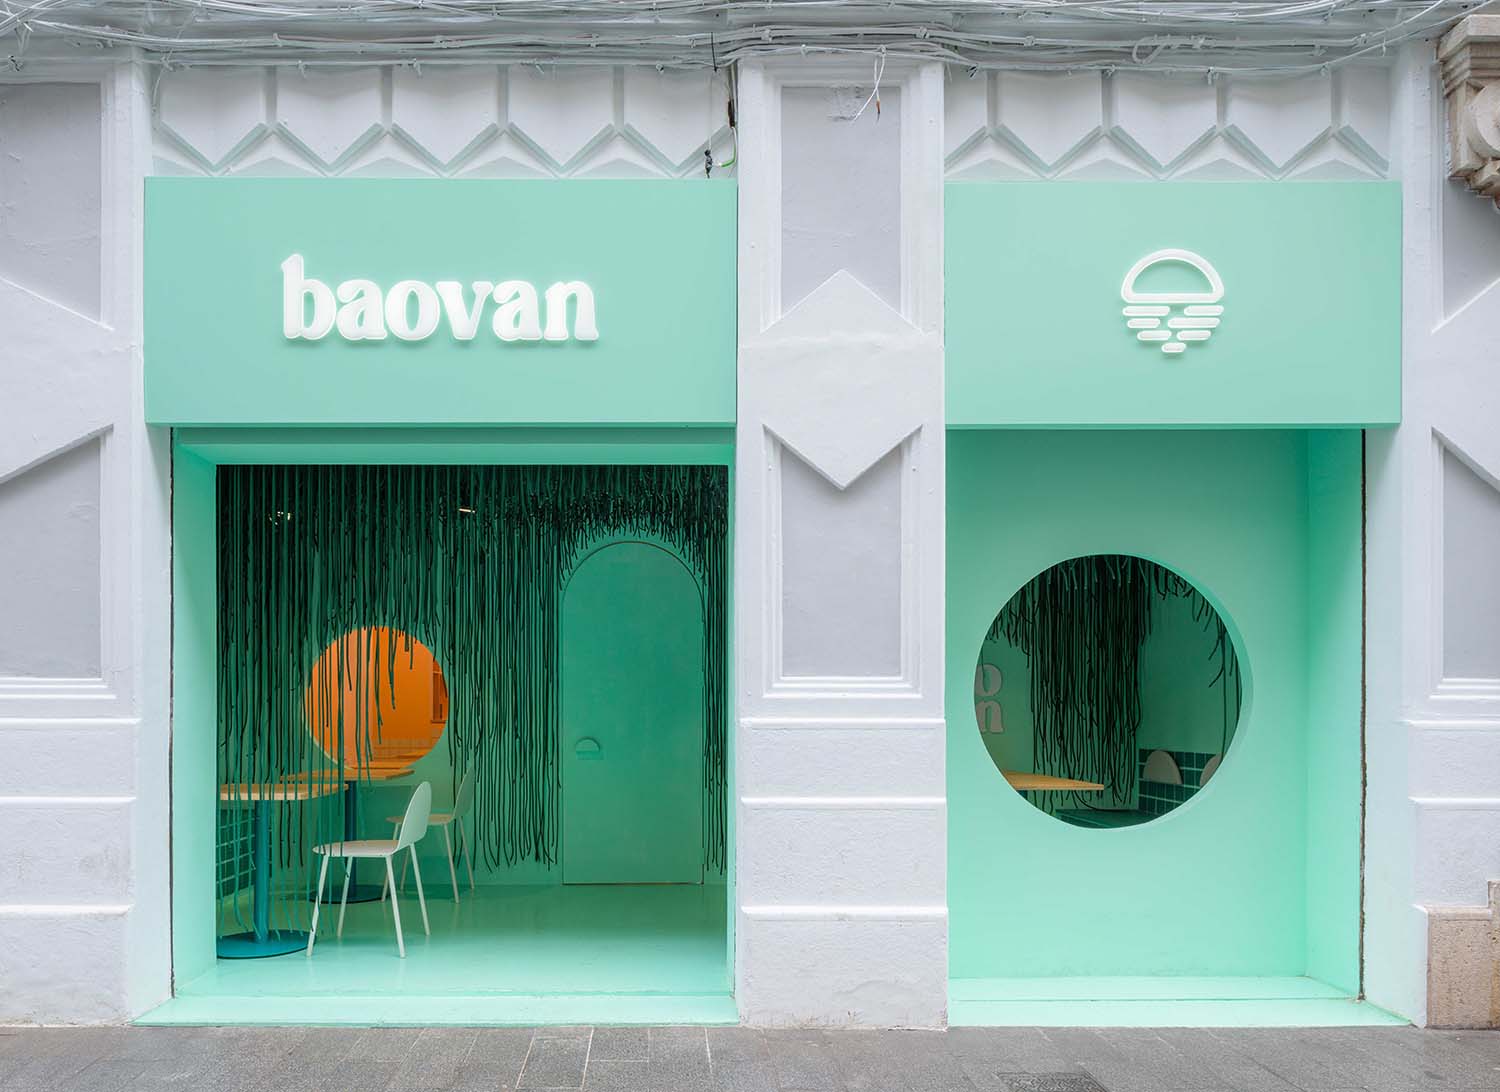 Baovan Valencia, Restoran Bao Dirancang oleh Clap Studio